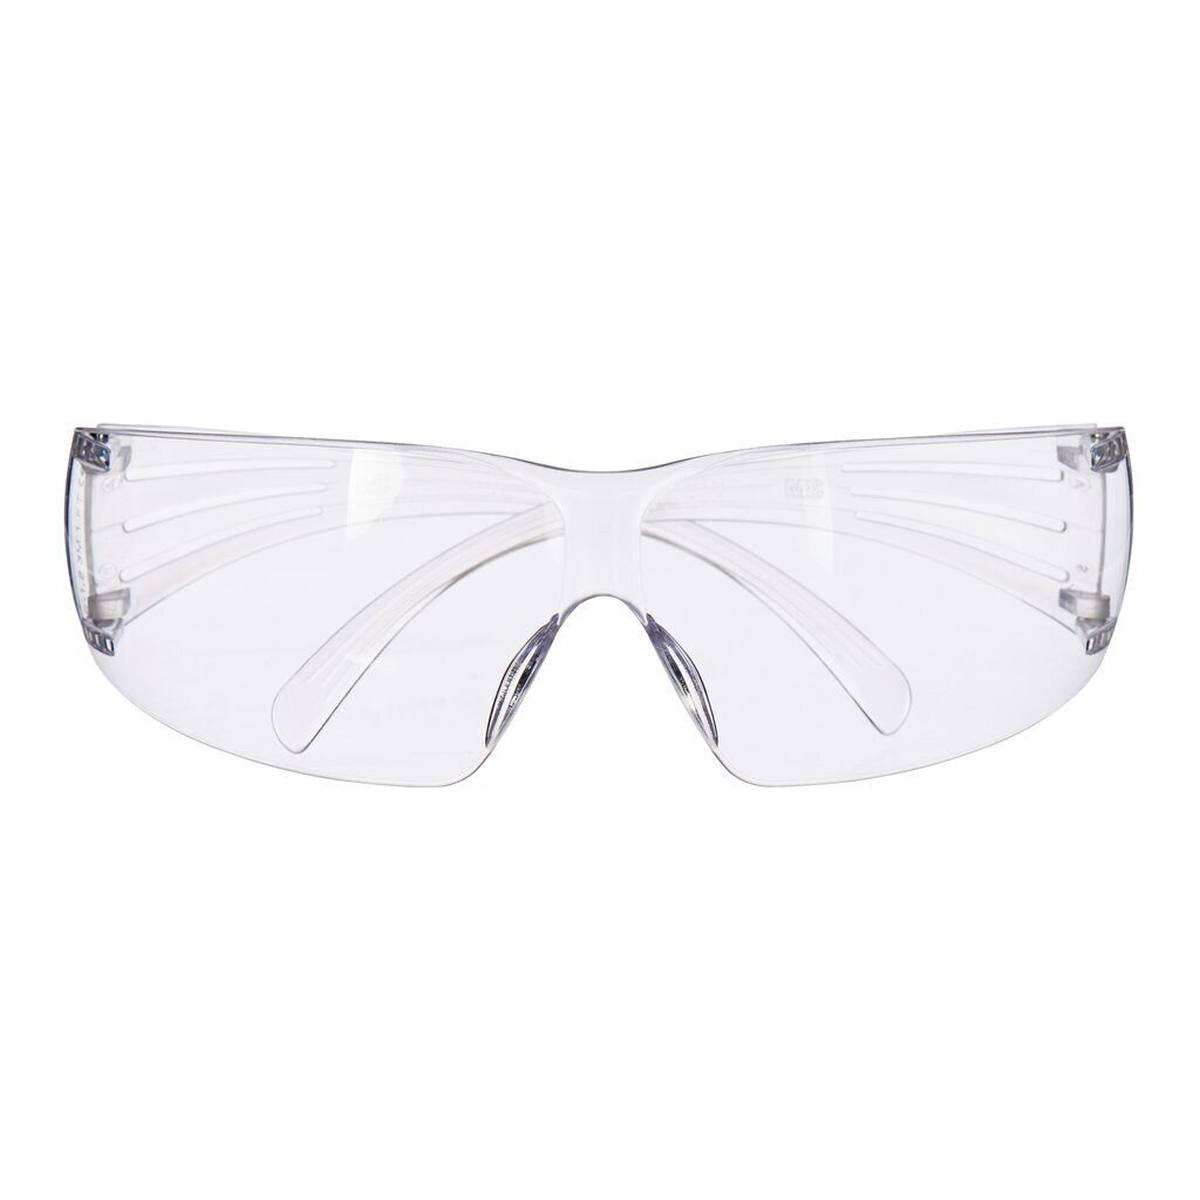 3M SecureFit 200 Schutzbrille, Antikratz-Beschichtung, transparente Scheibe, SF201AS-EU